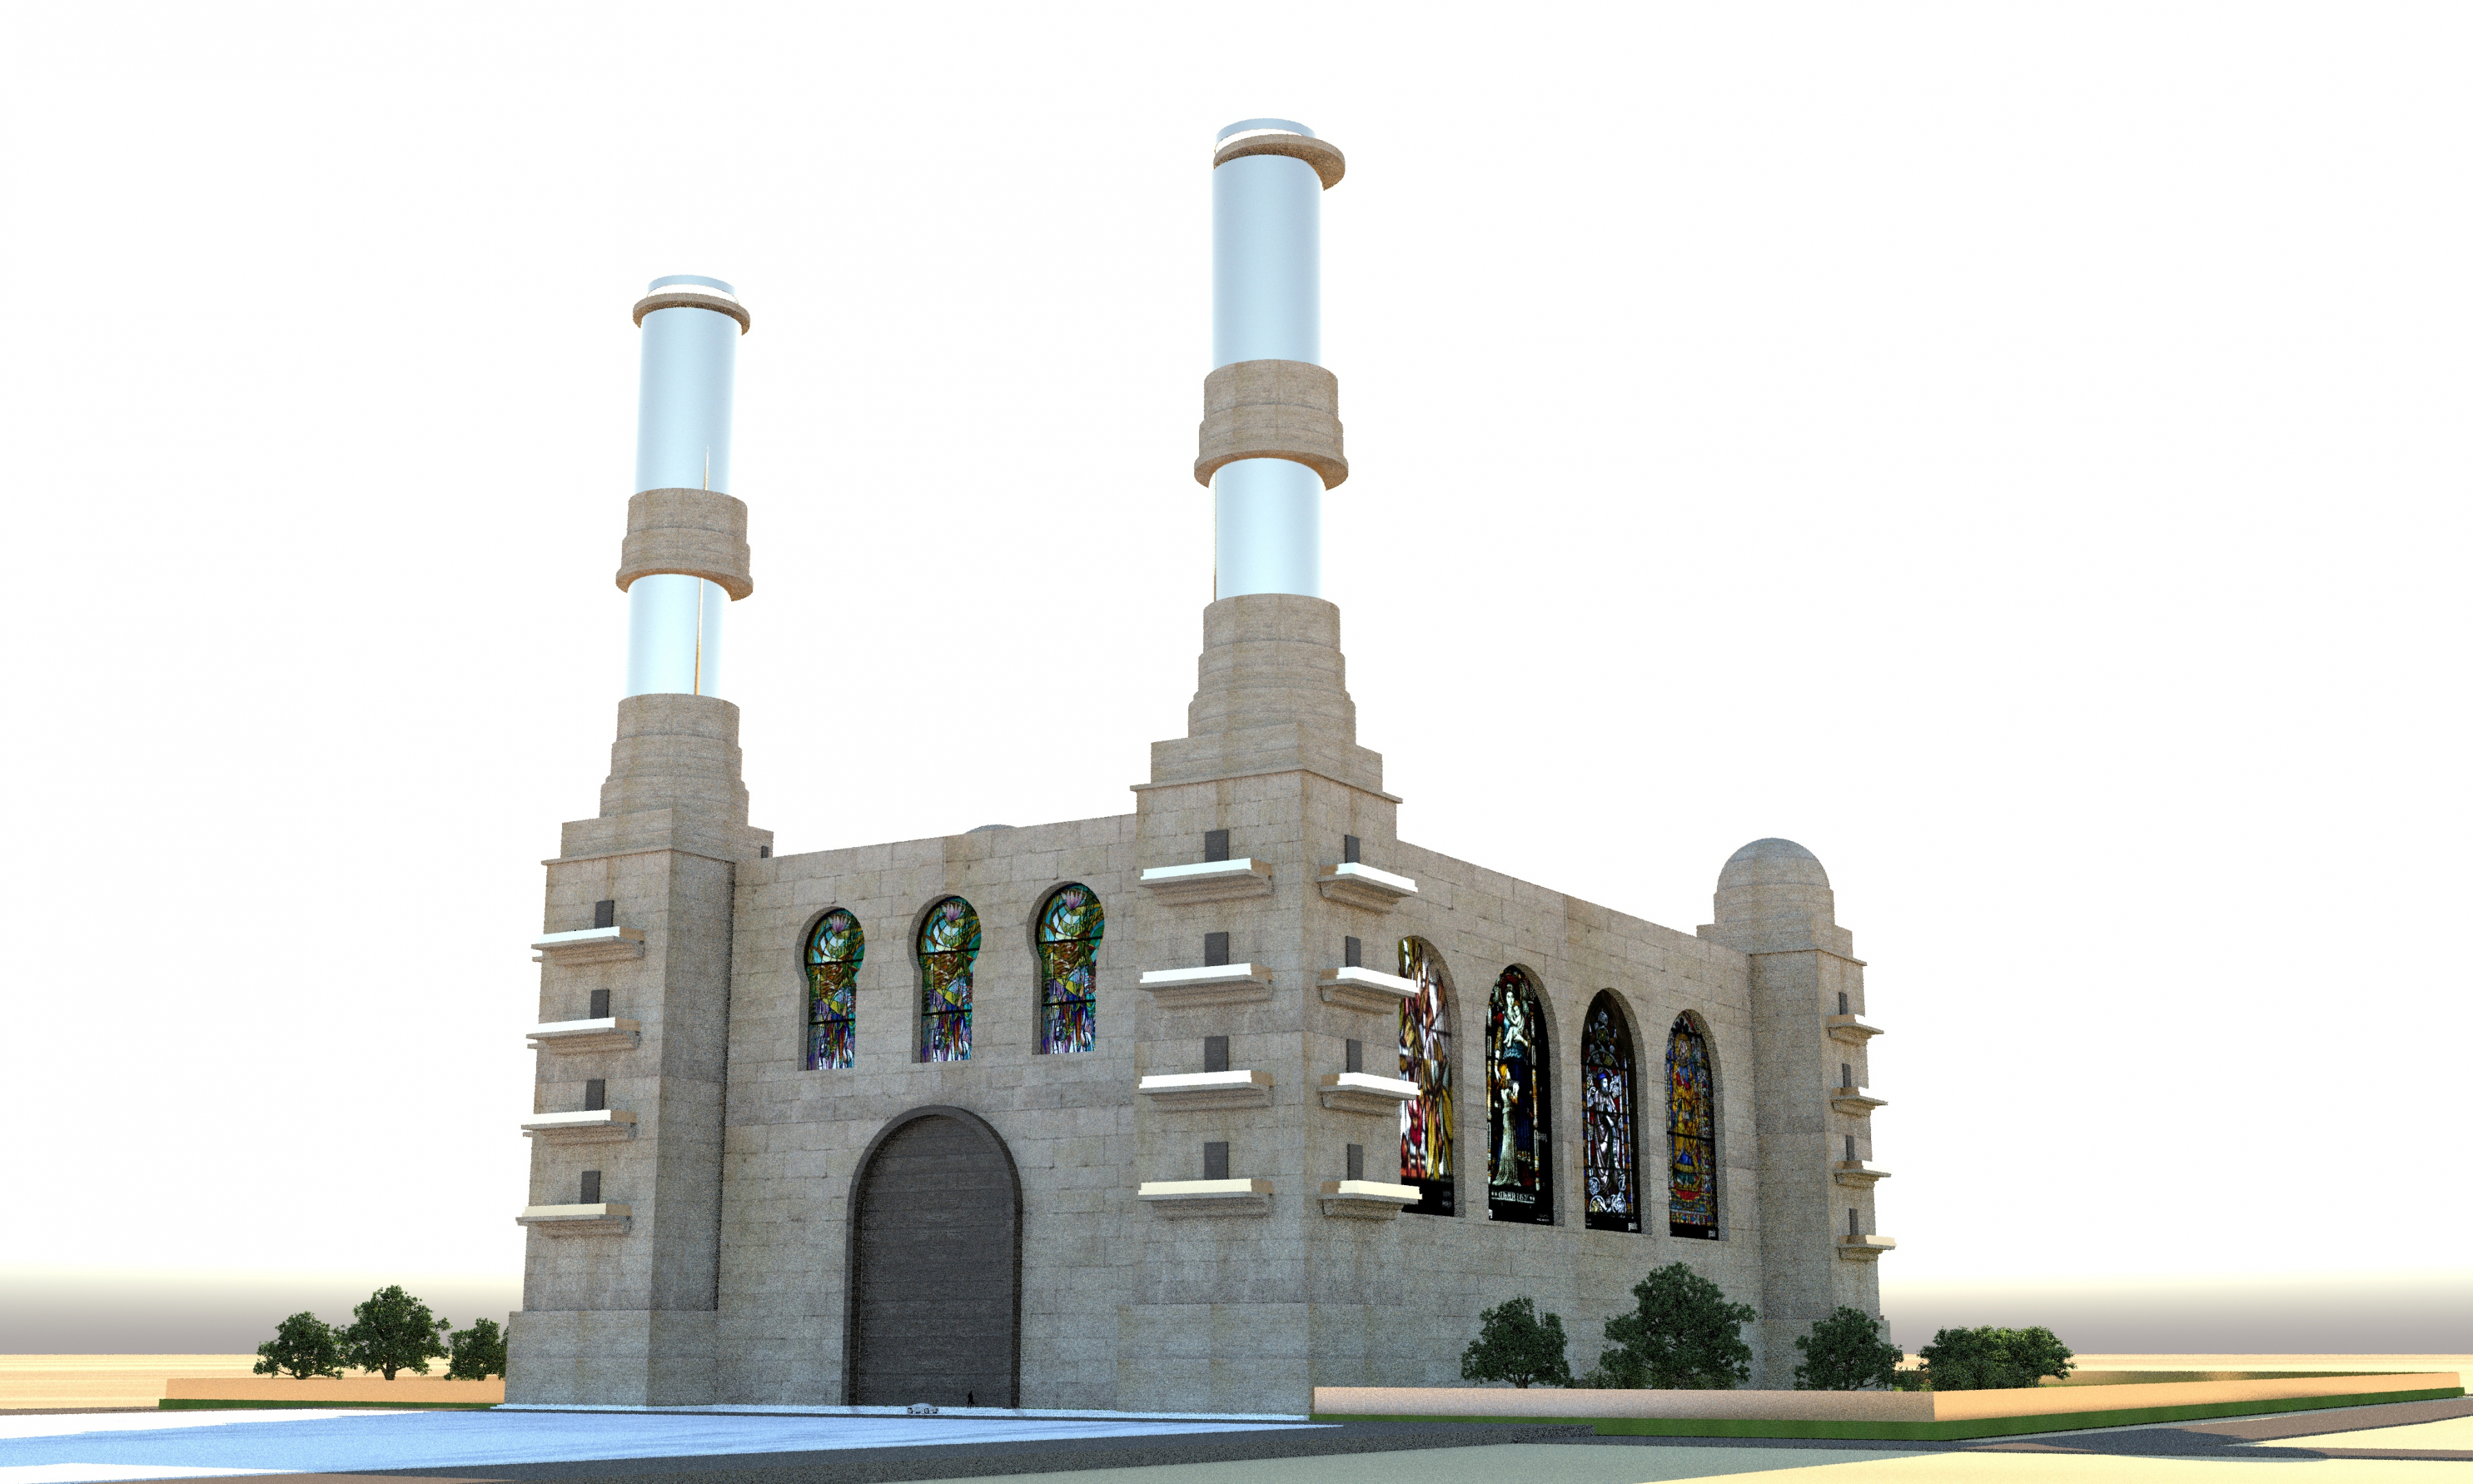 Вымышленный собор с золотыми башнями в AutoCAD vray 3.0 изображение